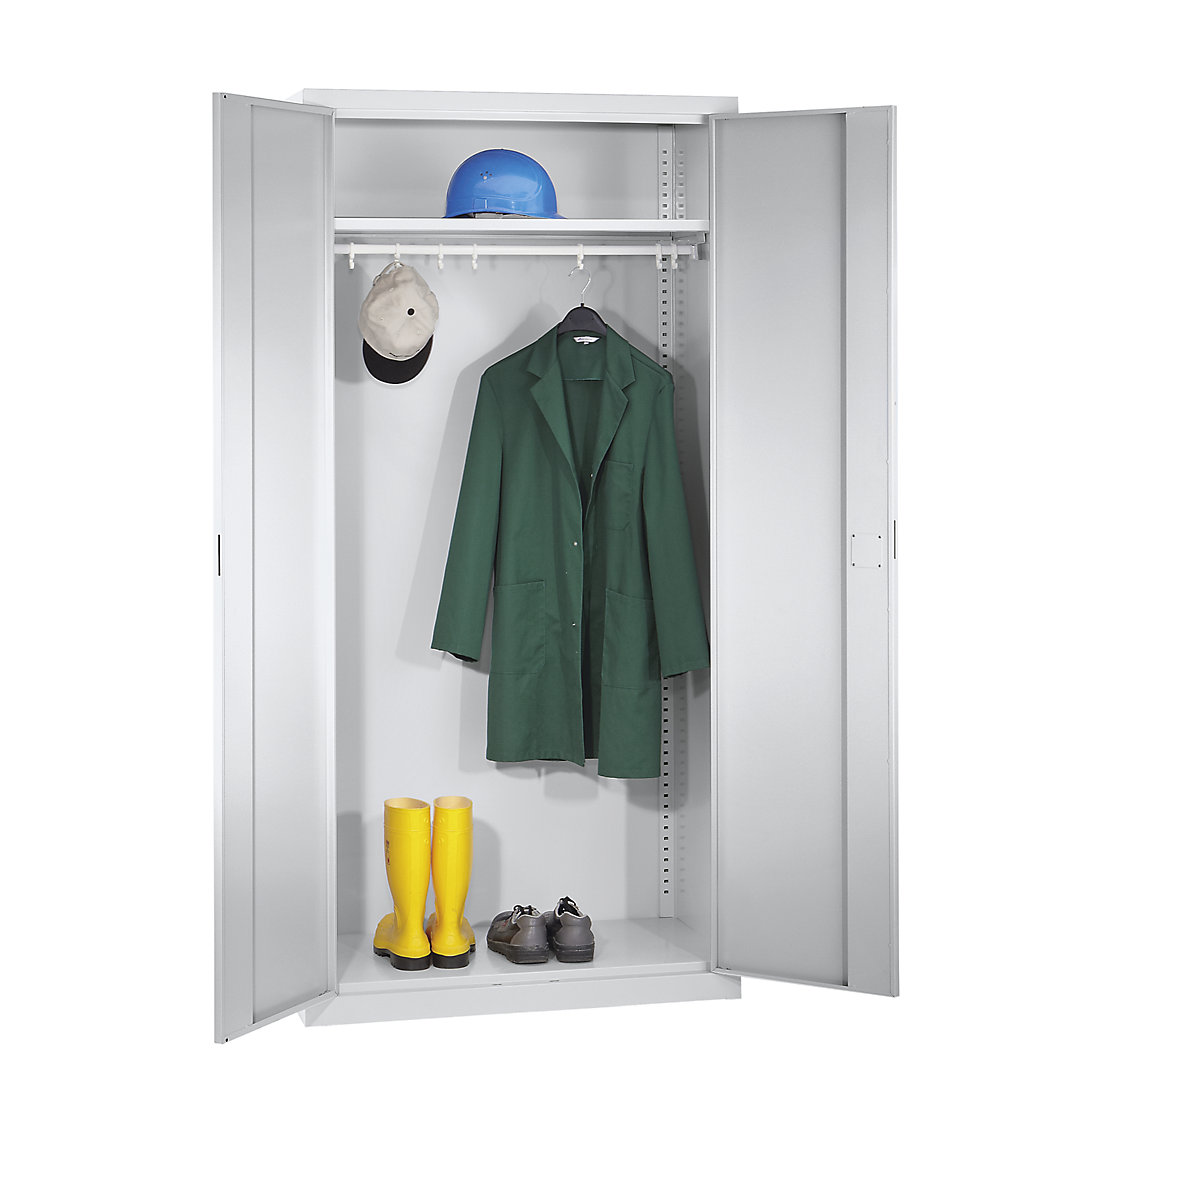 Szárnyasajtós szekrény – eurokraft pro, 1 kalaptartó polc, 1 ruhaakasztó rúd, világosszürke-2